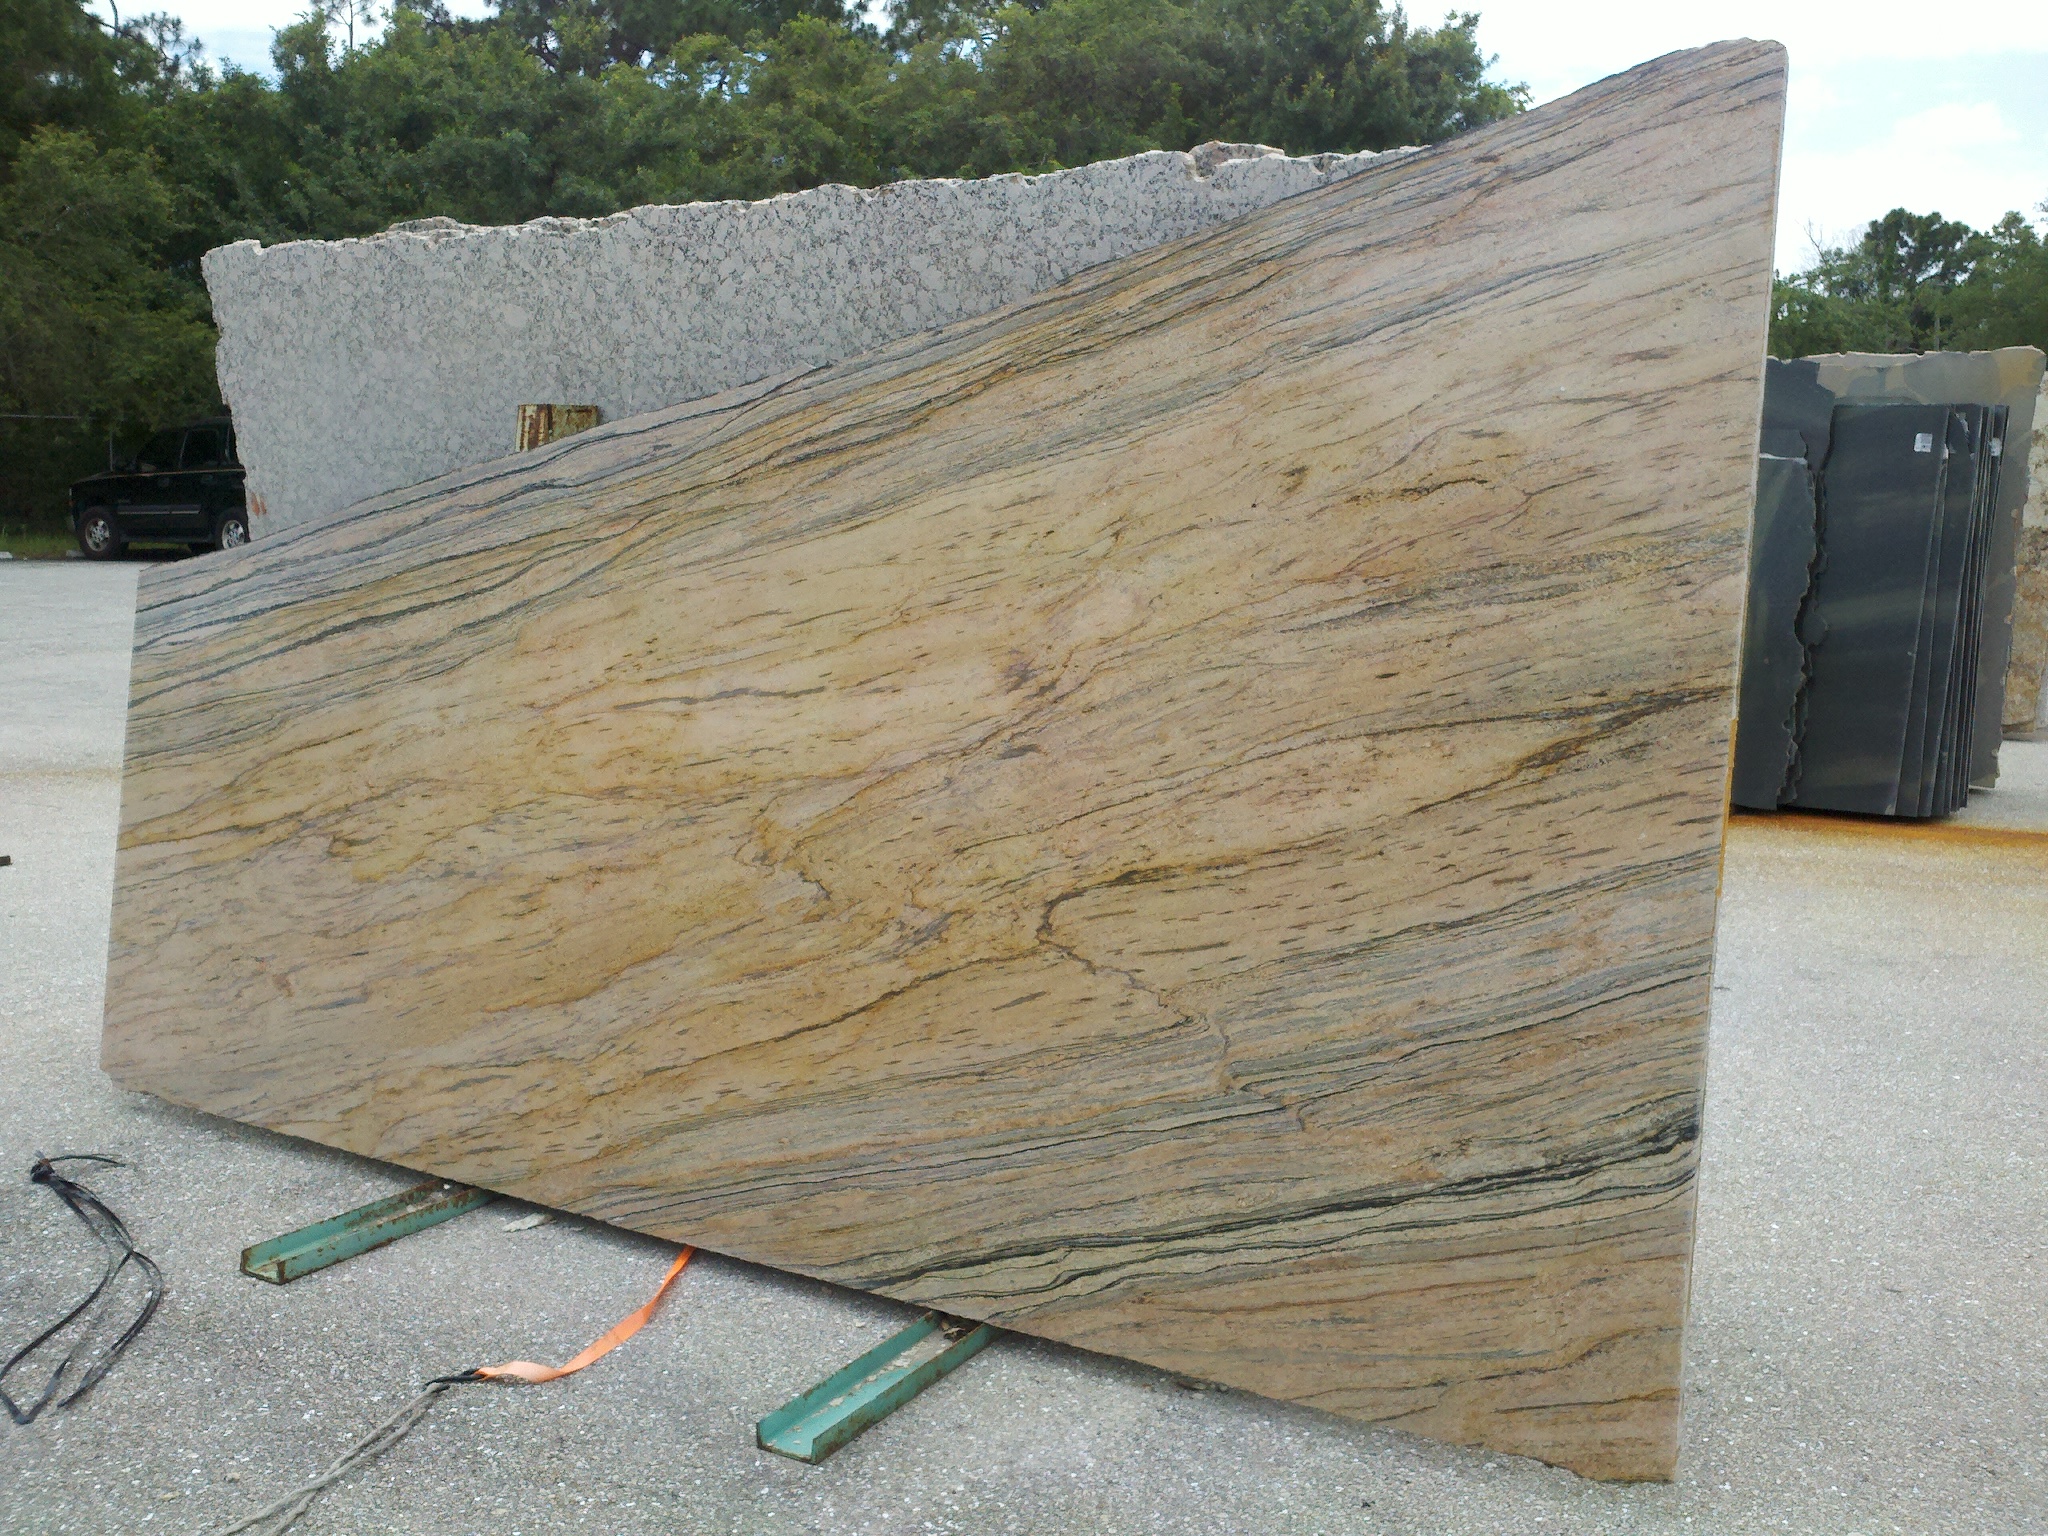 The granite slab